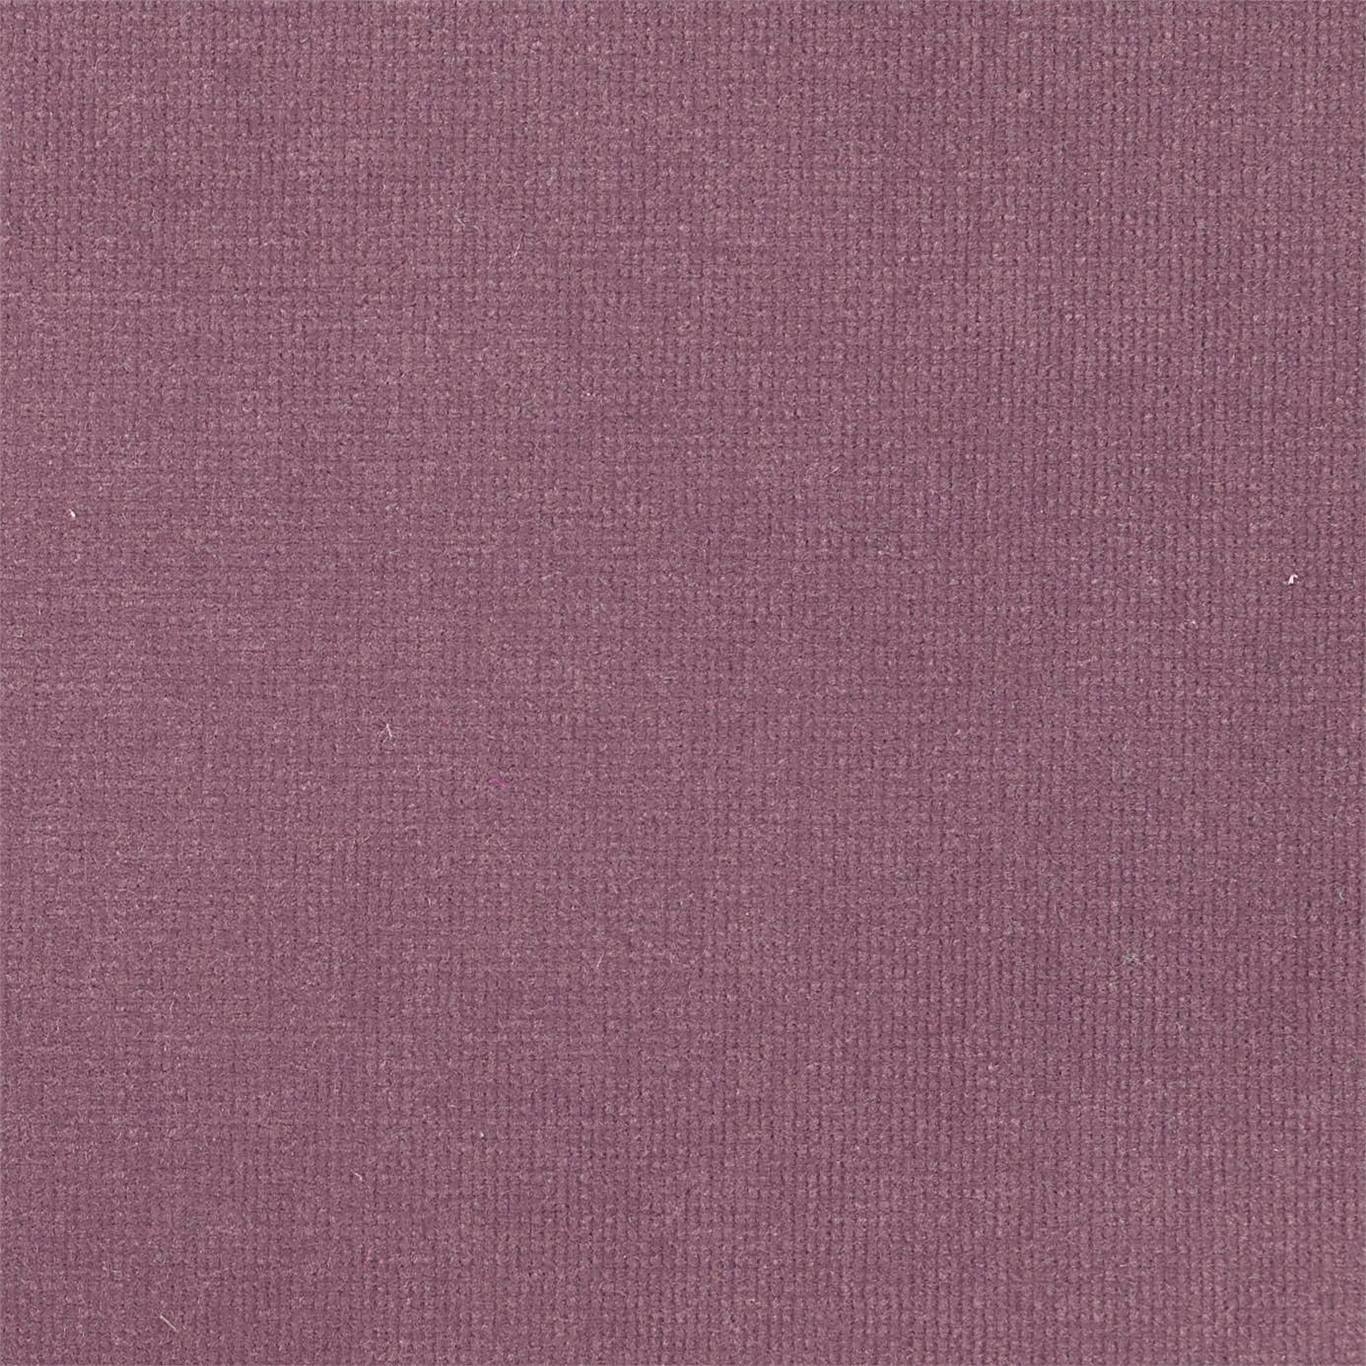 Plush Velvet Aubergine Fabric by HAR